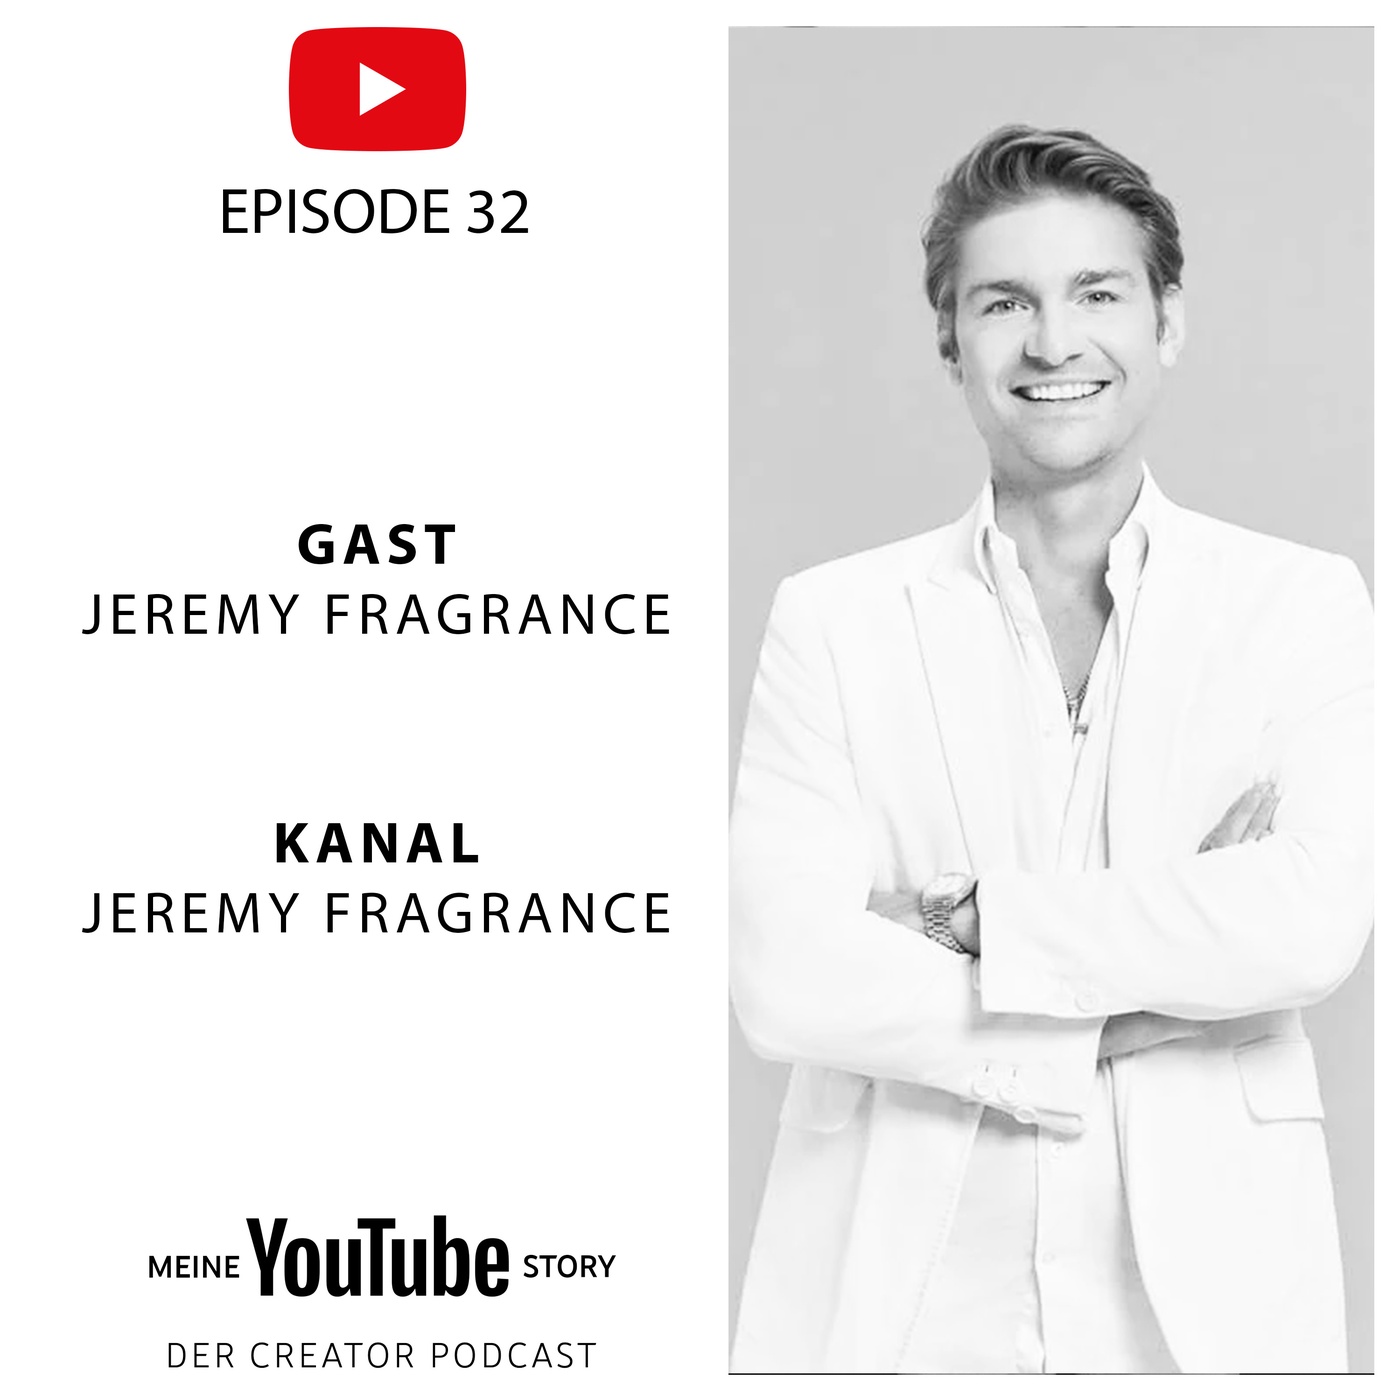 Jeremy Fragrance: Zwischen Parfüm und einarmigen Liegestützen